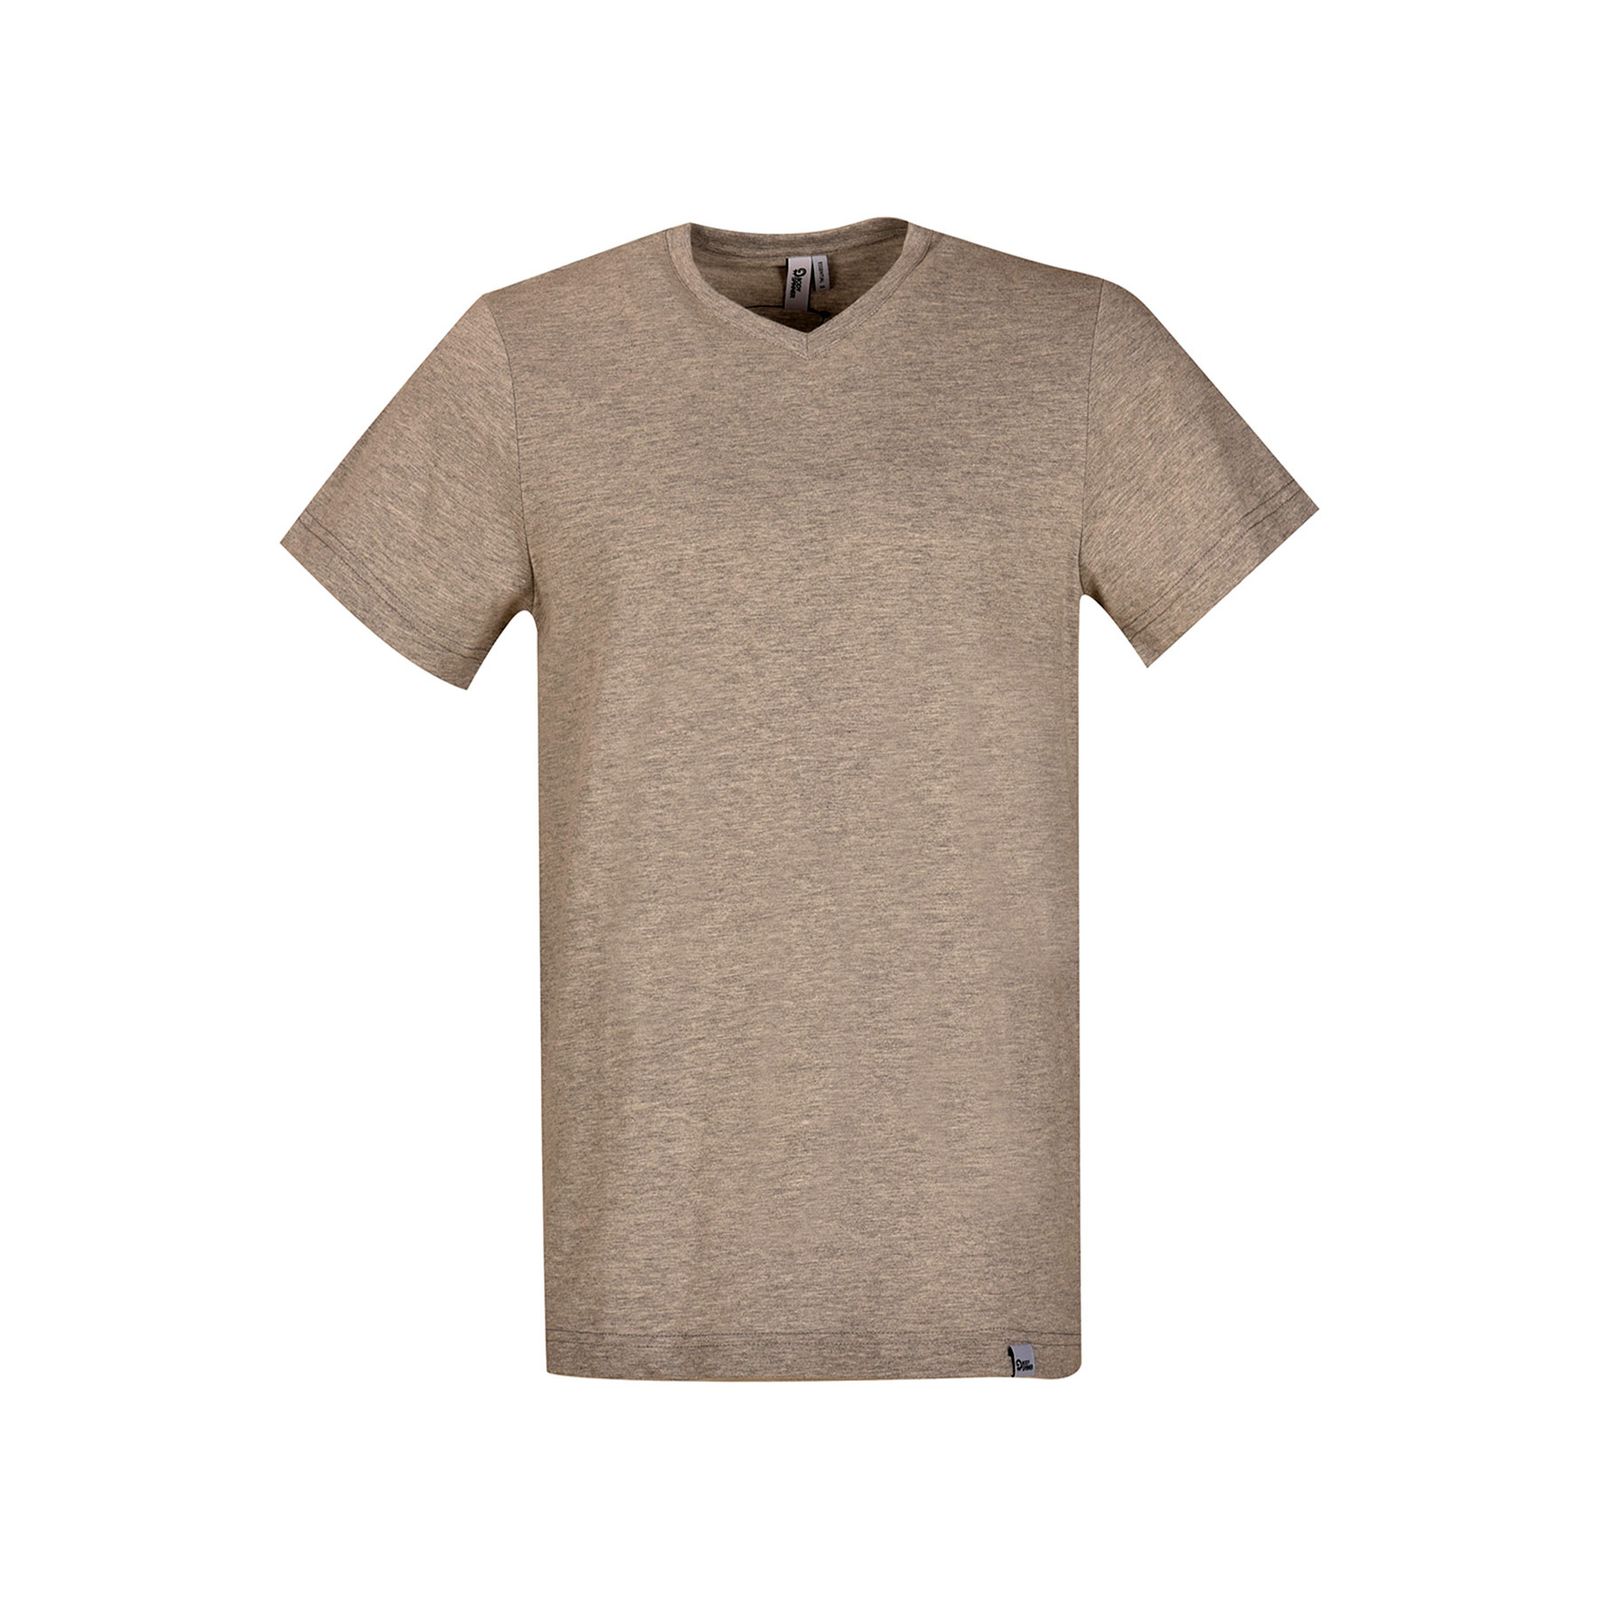 تی شرت آستین کوتاه مردانه بادی اسپینر مدل 5057 کد 1 رنگ طوسی -  - 1